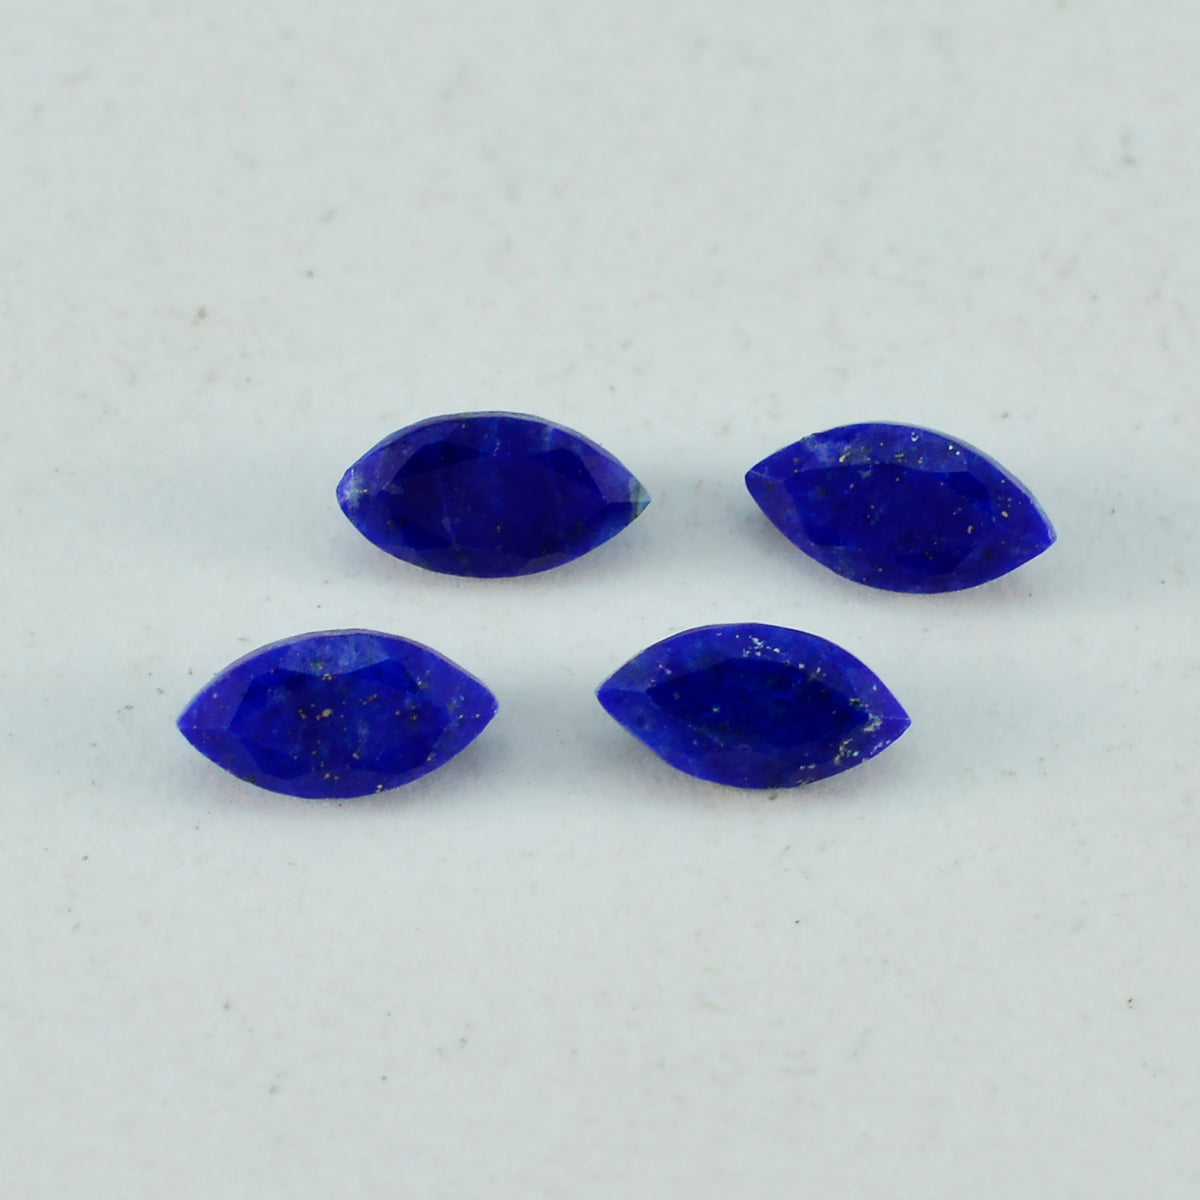 Riyogems 1 Stück natürlicher blauer Lapislazuli, facettiert, 8 x 16 mm, Marquise-Form, A1-Qualitätsedelstein